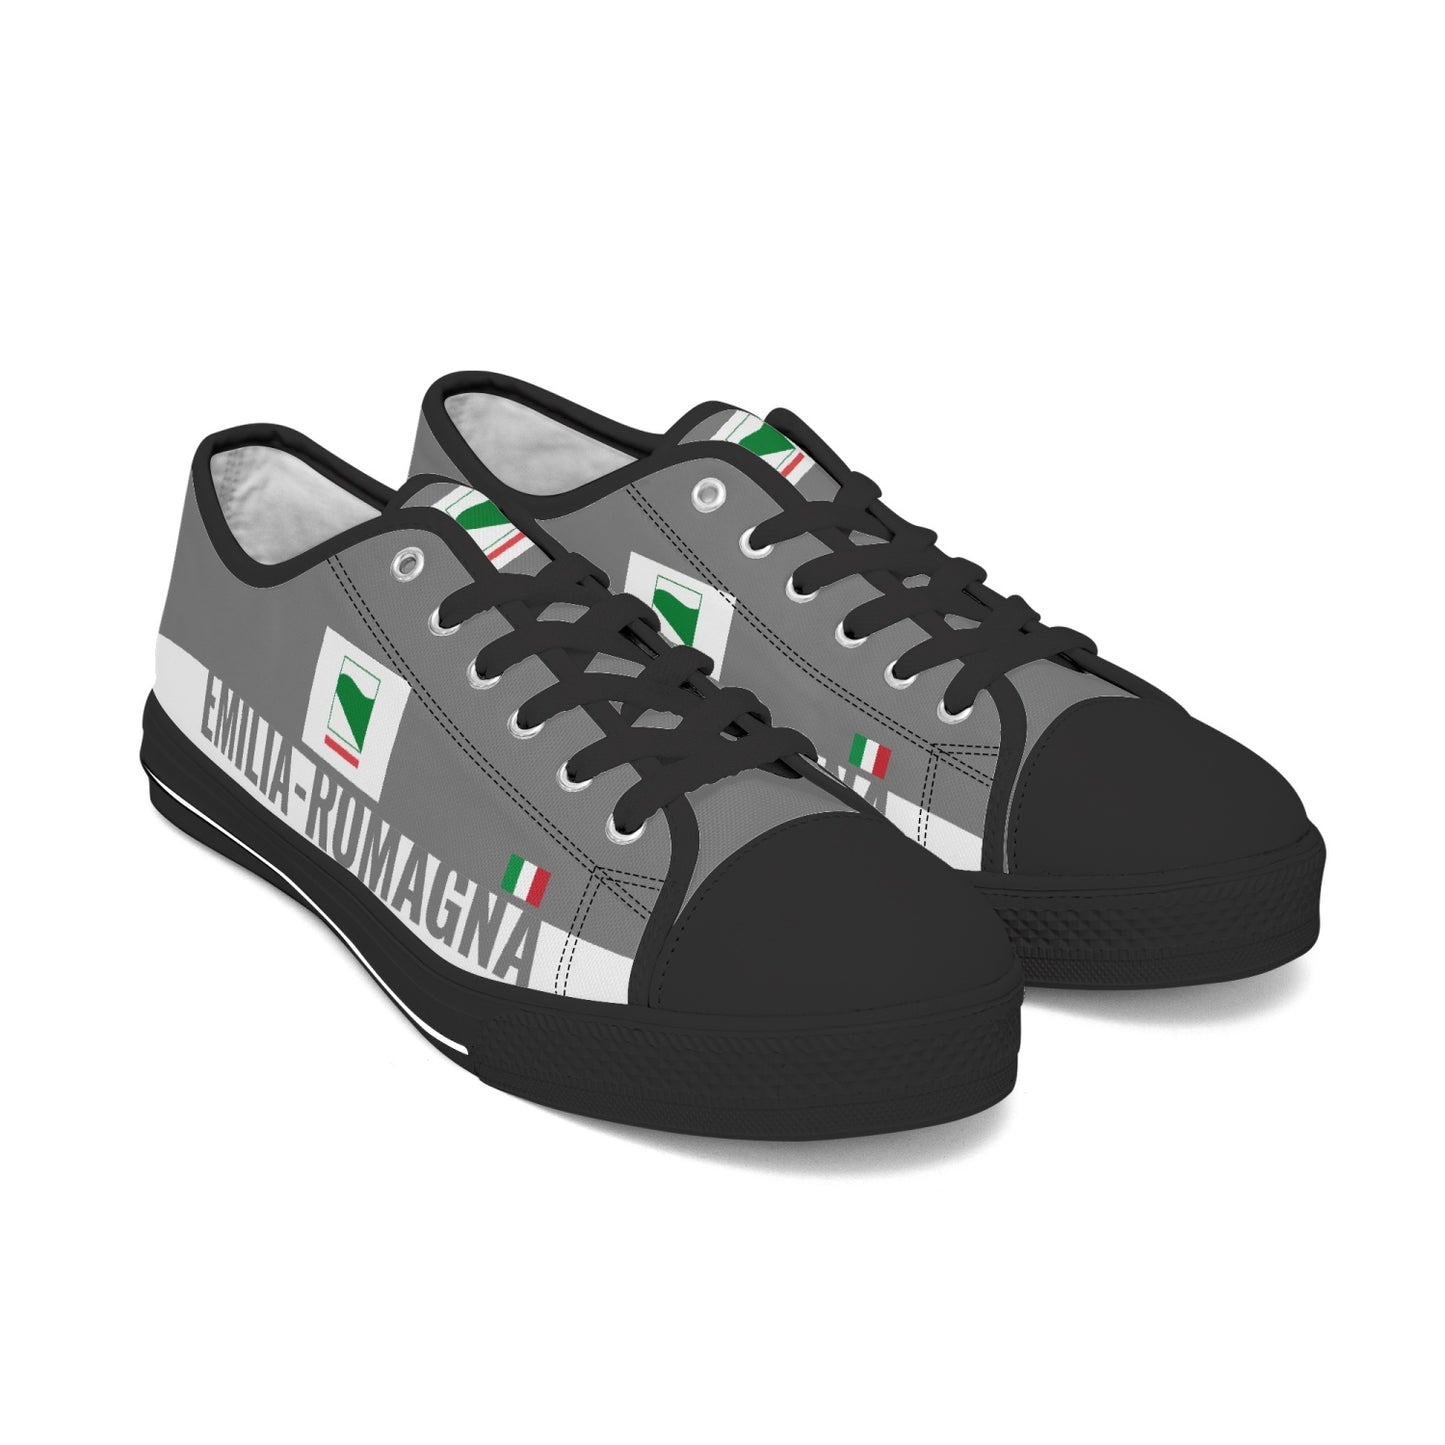 Emilia-Romagna Shoes Low-top V2